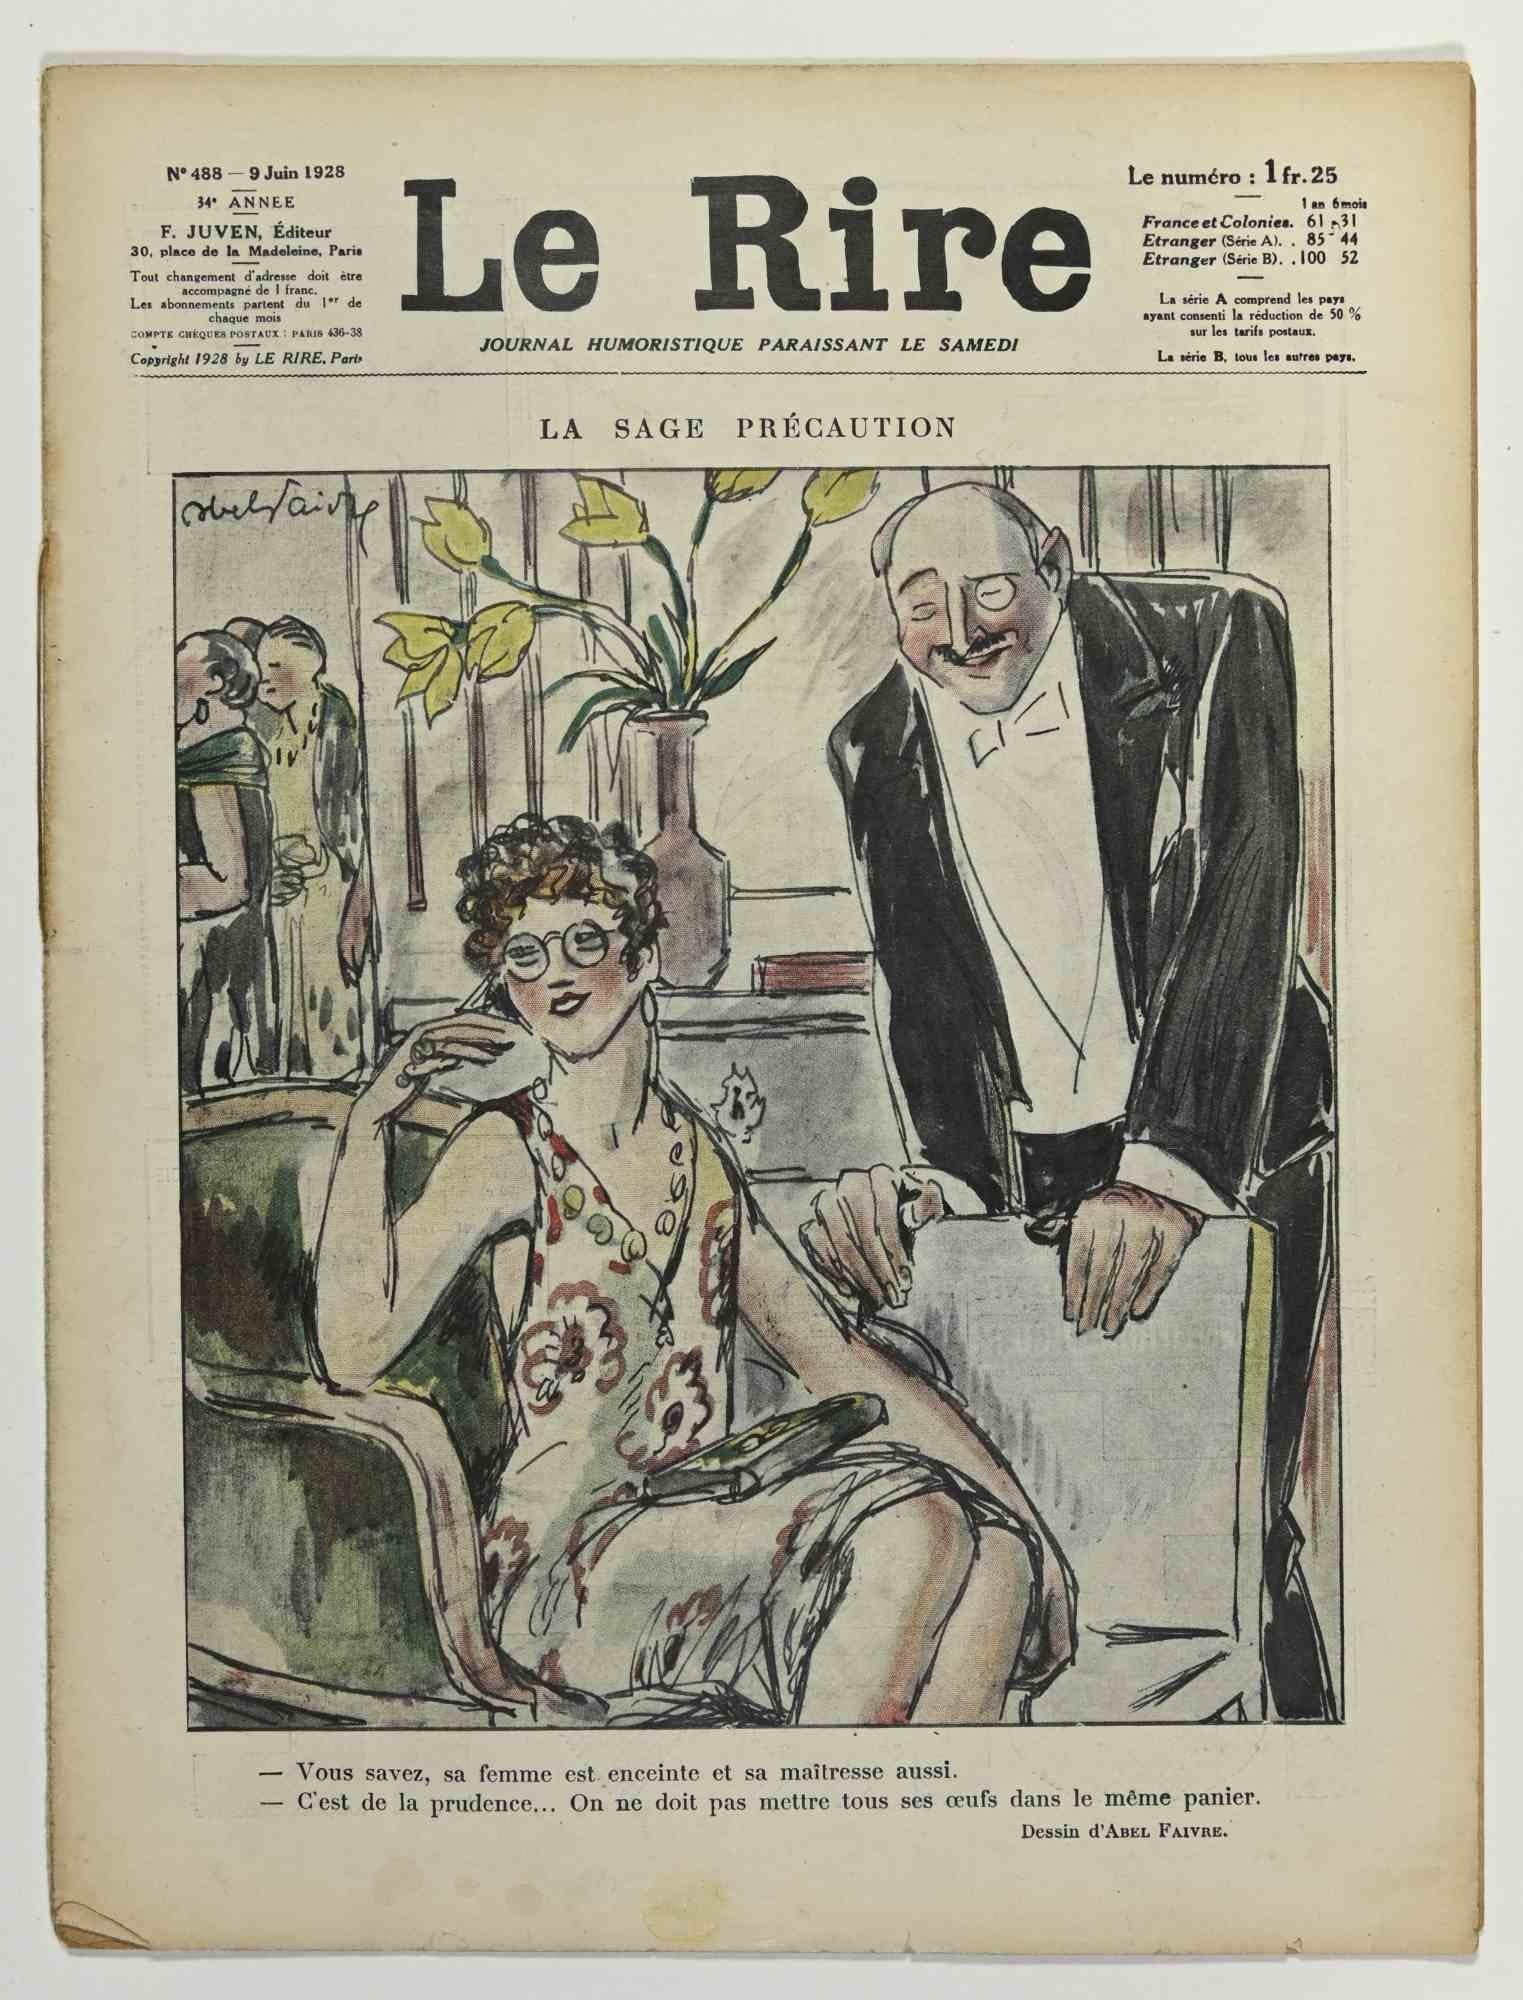 Le Rire - Illustrated Magazine by Abel Faivre - 1928 - Art by Jules-Abel Faivre